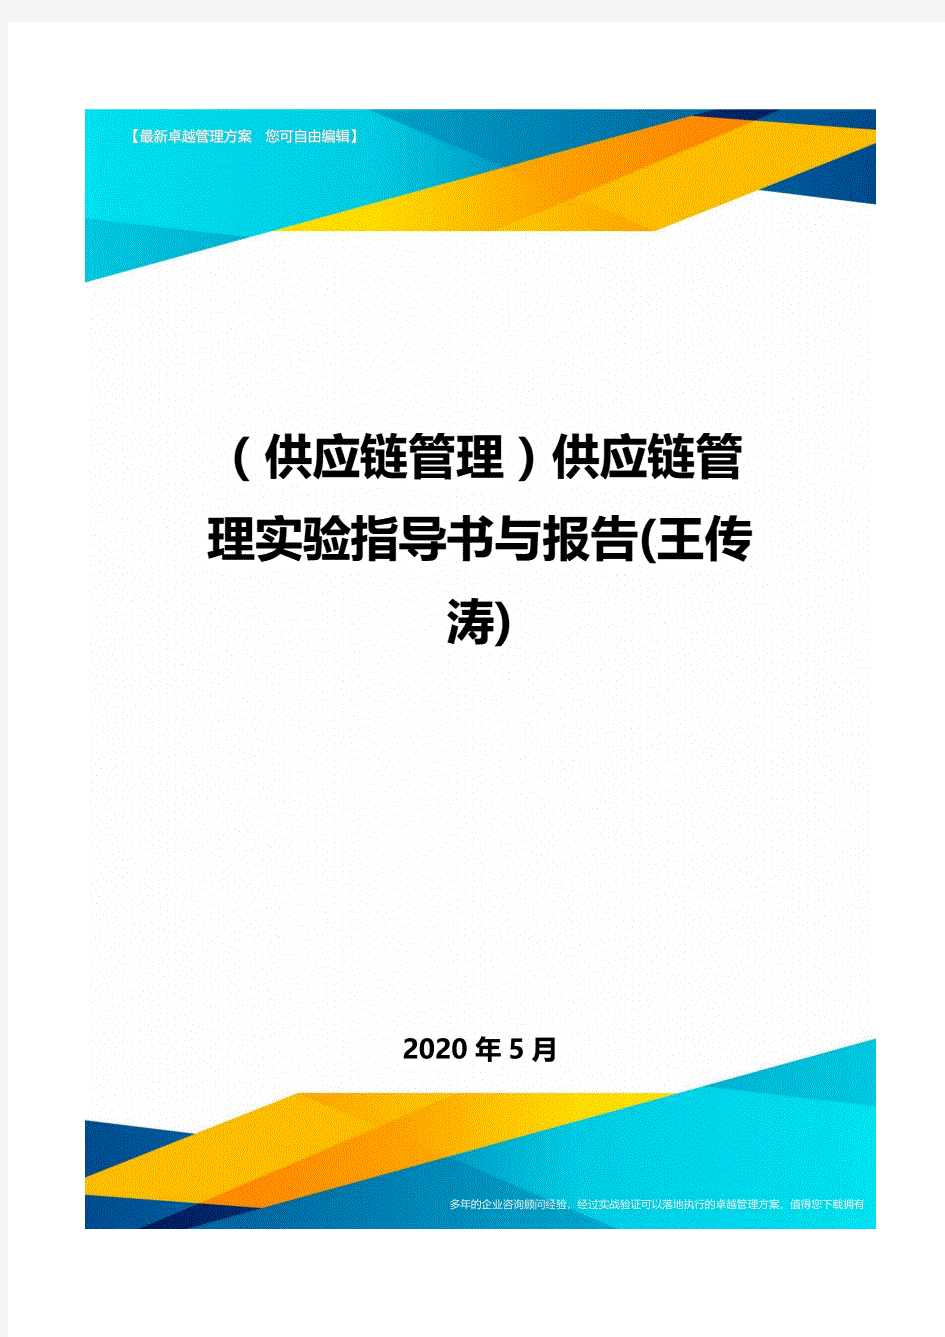 (供应链管理)供应链管理实验指导书与报告(王传涛)